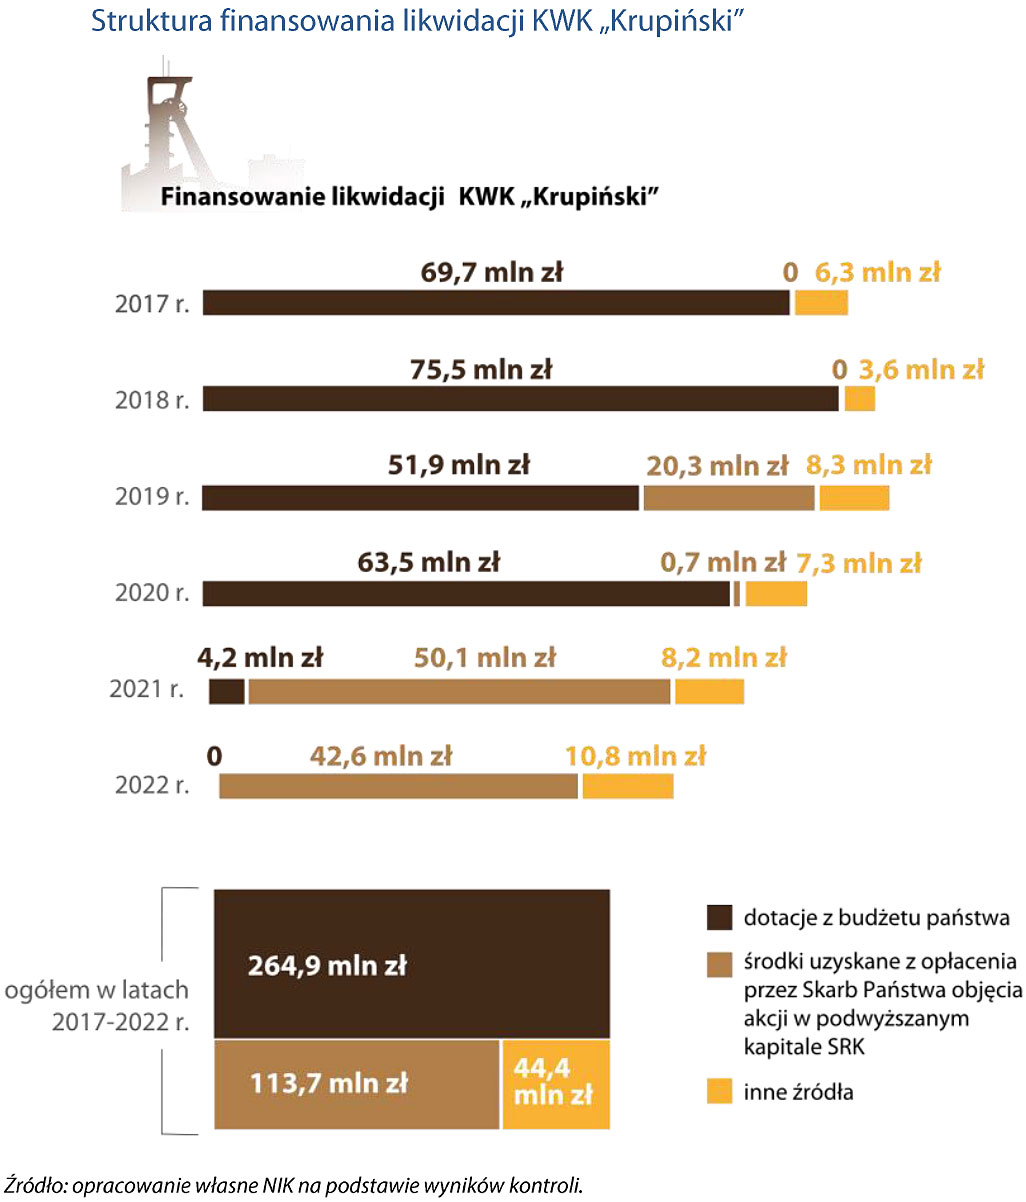 Struktura finansowania likwidacji KWK Krupiński (opis grafiki poniżej)